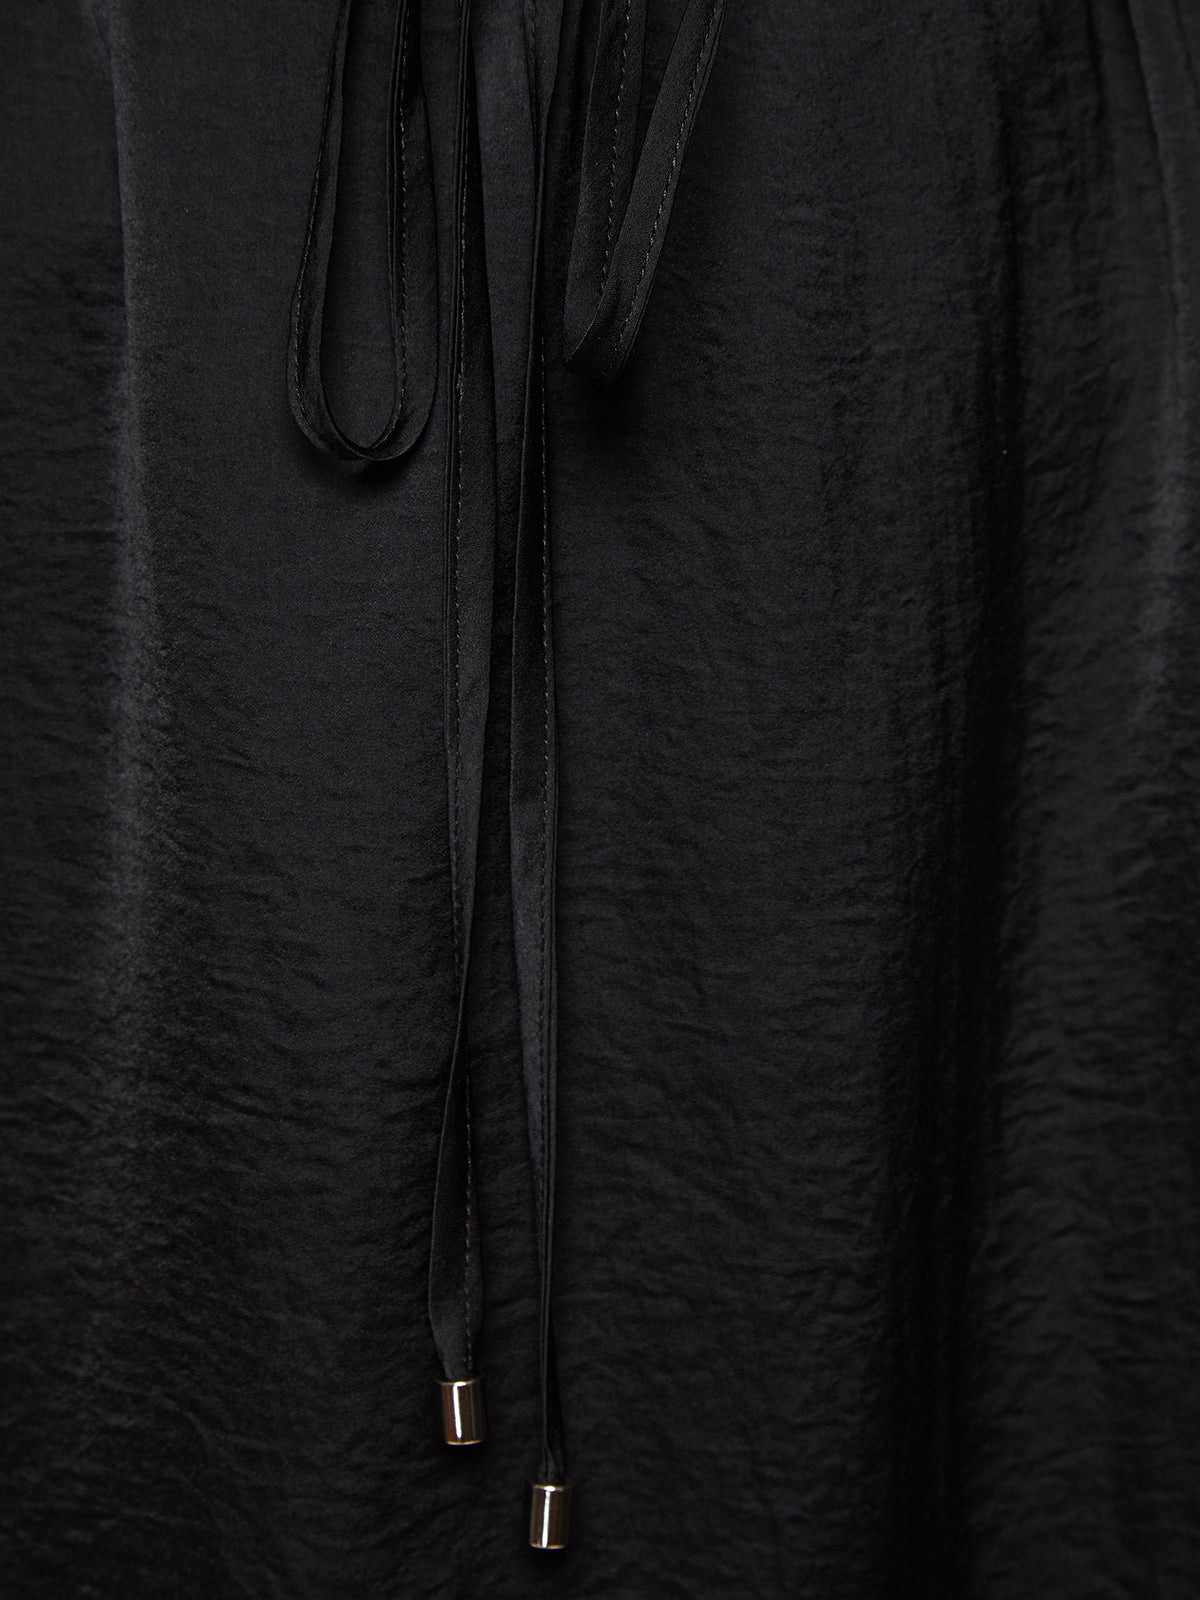 YOLANDA MINI DRESS BLACK